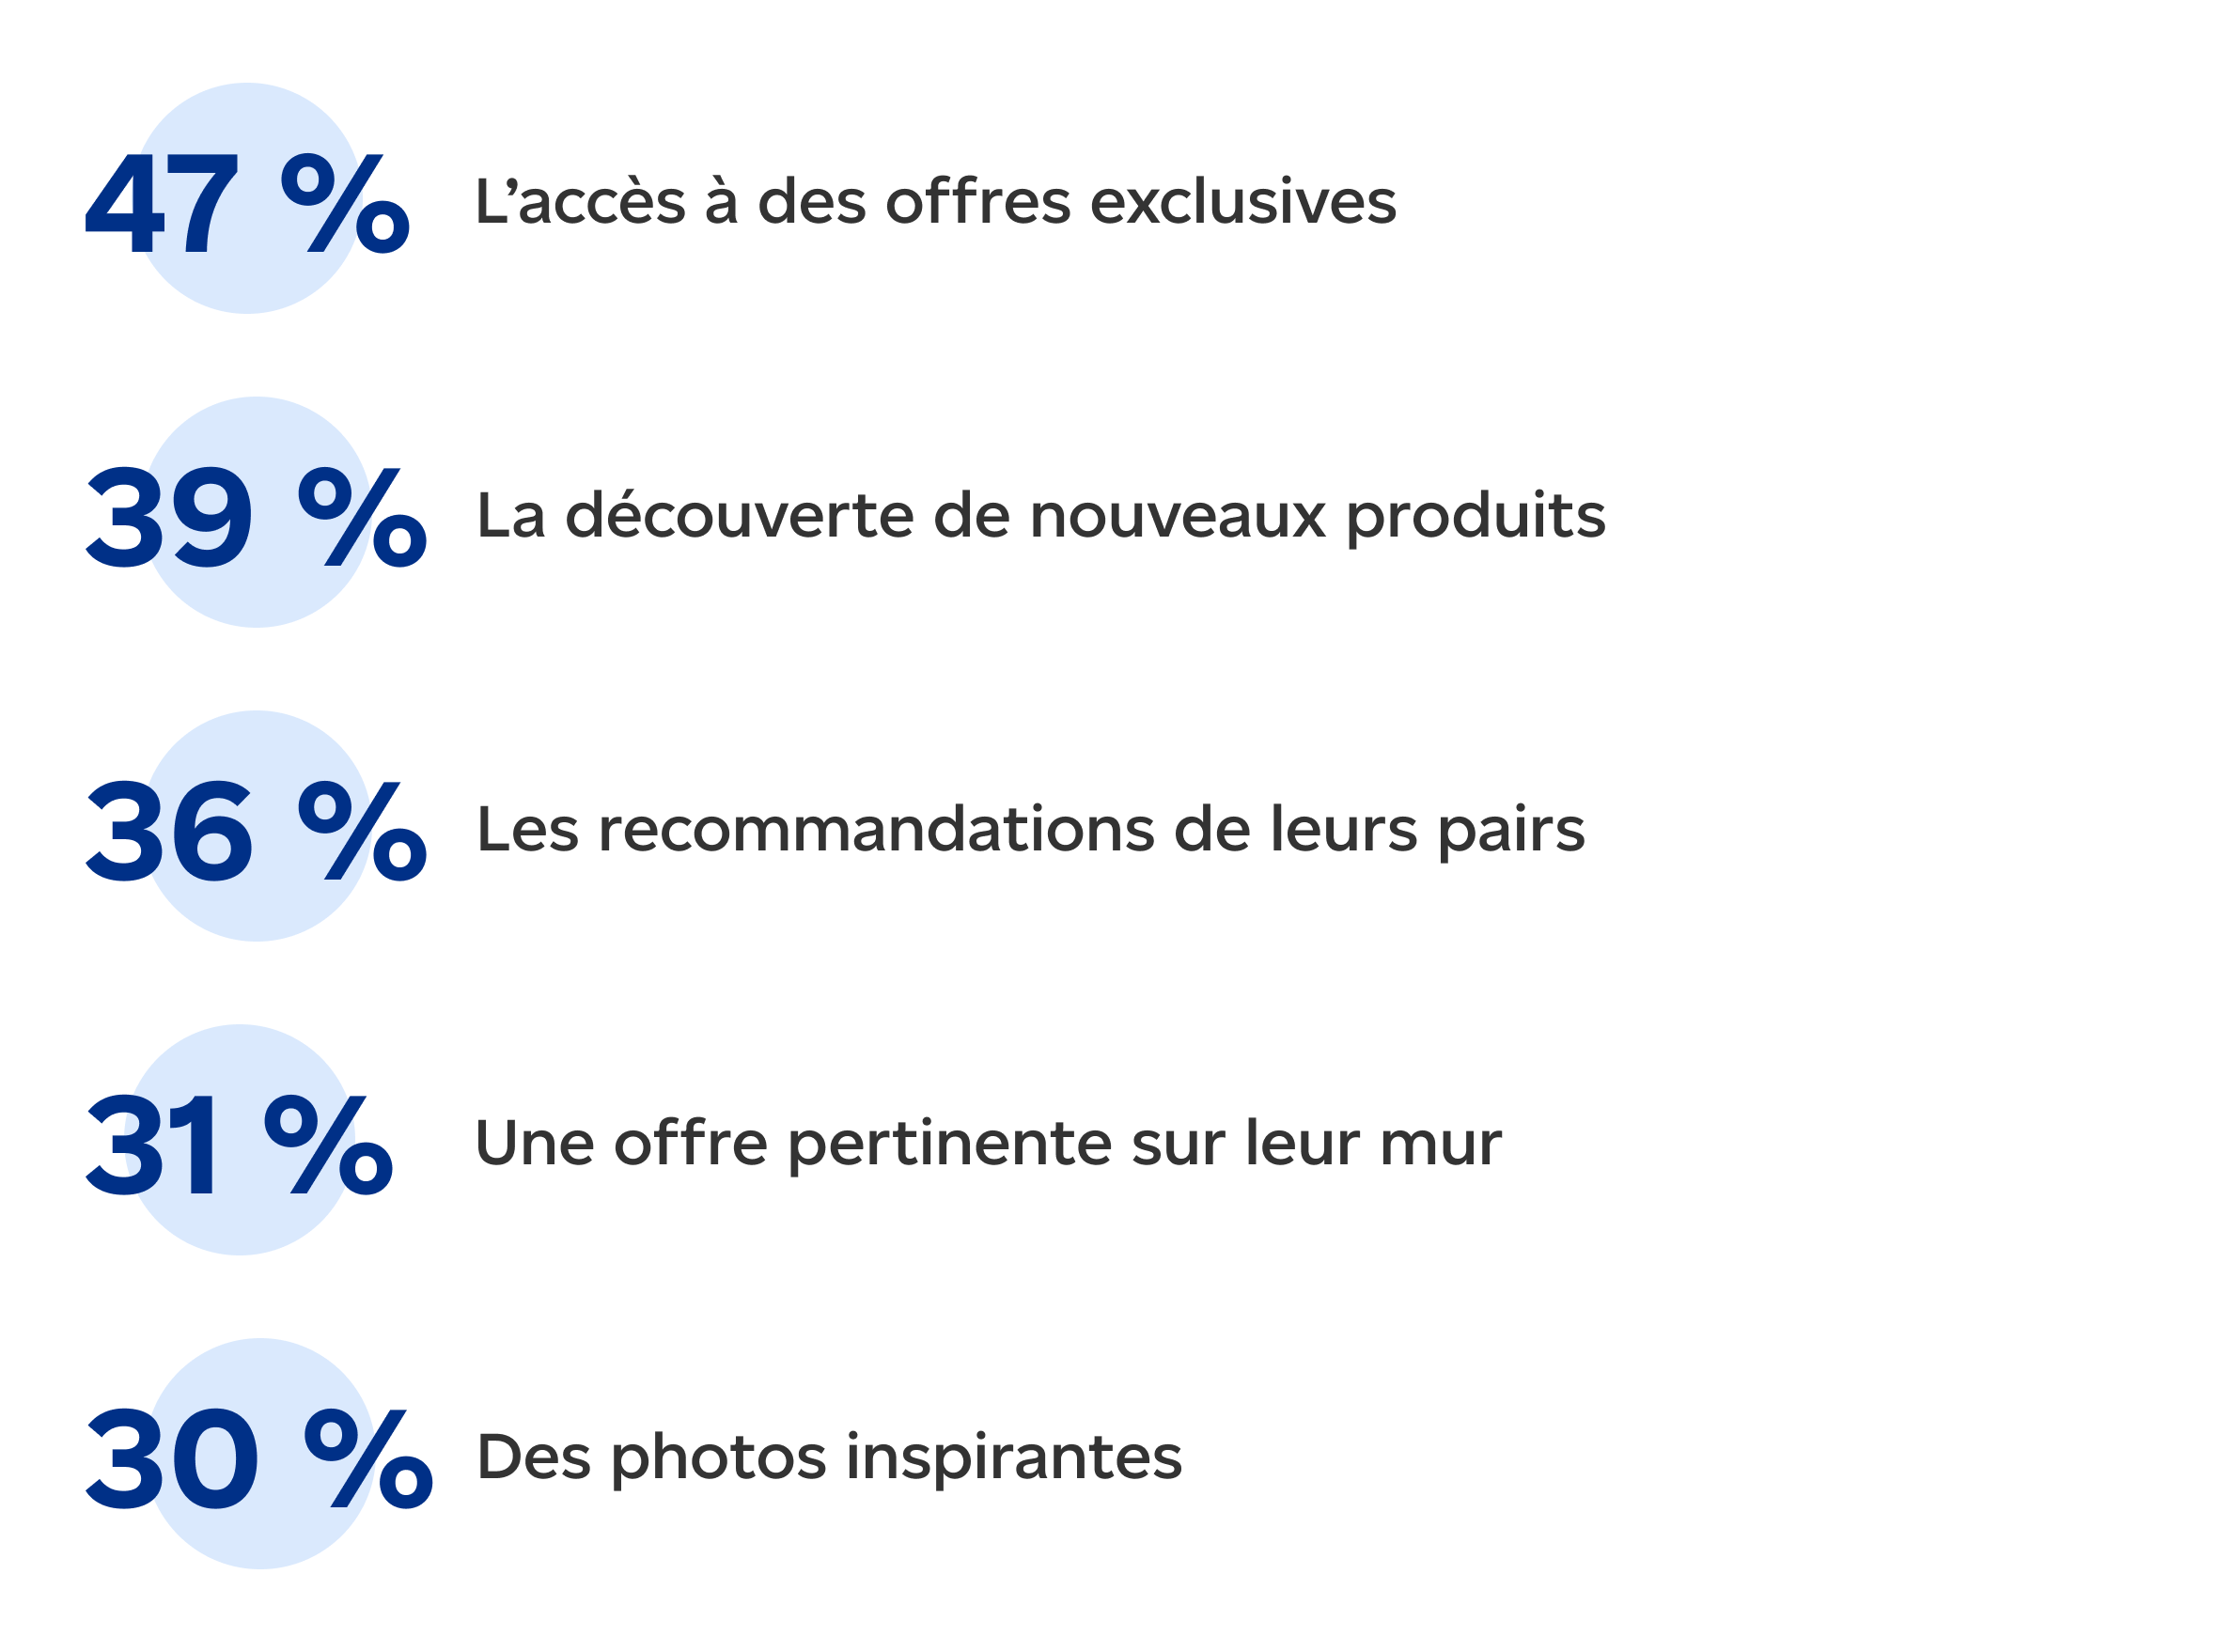 L’accès à des offres exclusives (47 %). La découverte de nouveaux produits (39 %). Les recommandations de leurs pairs (36 %). Une offre pertinente sur leur mur (31 %). Des photos inspirantes (30 %). 